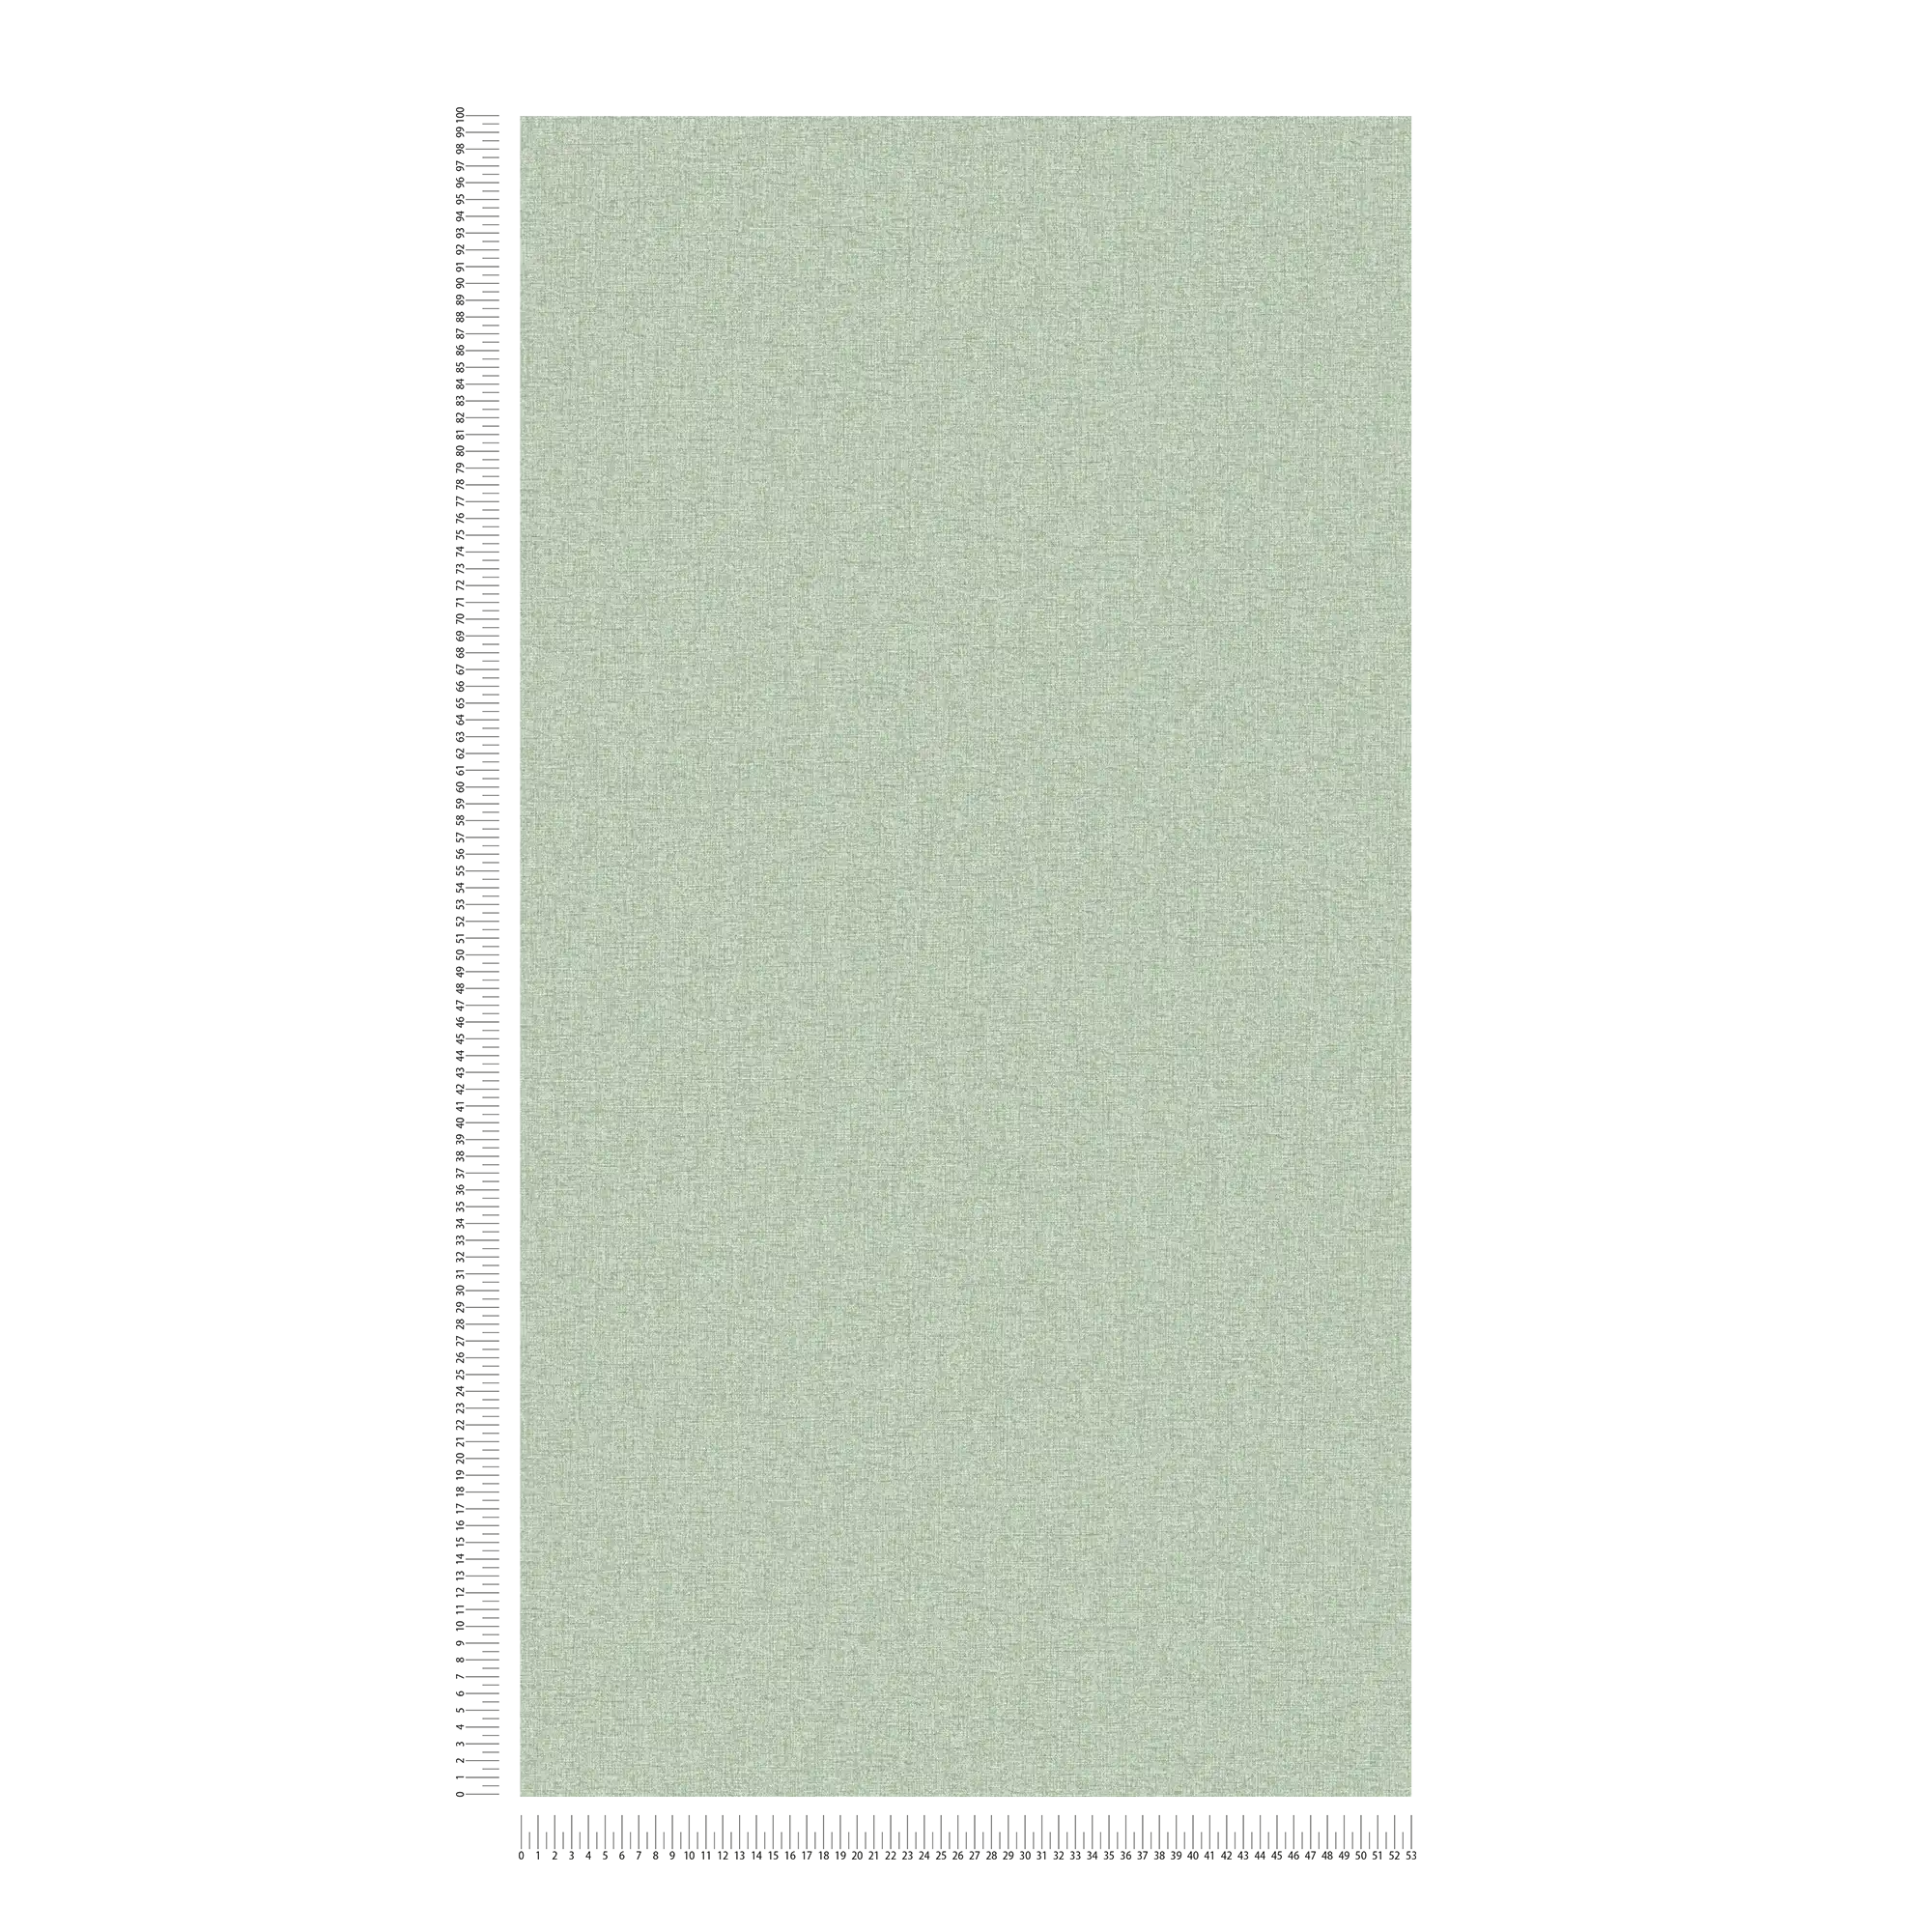             Effen behang in weefsellook met lichte structuur, mat - groen
        